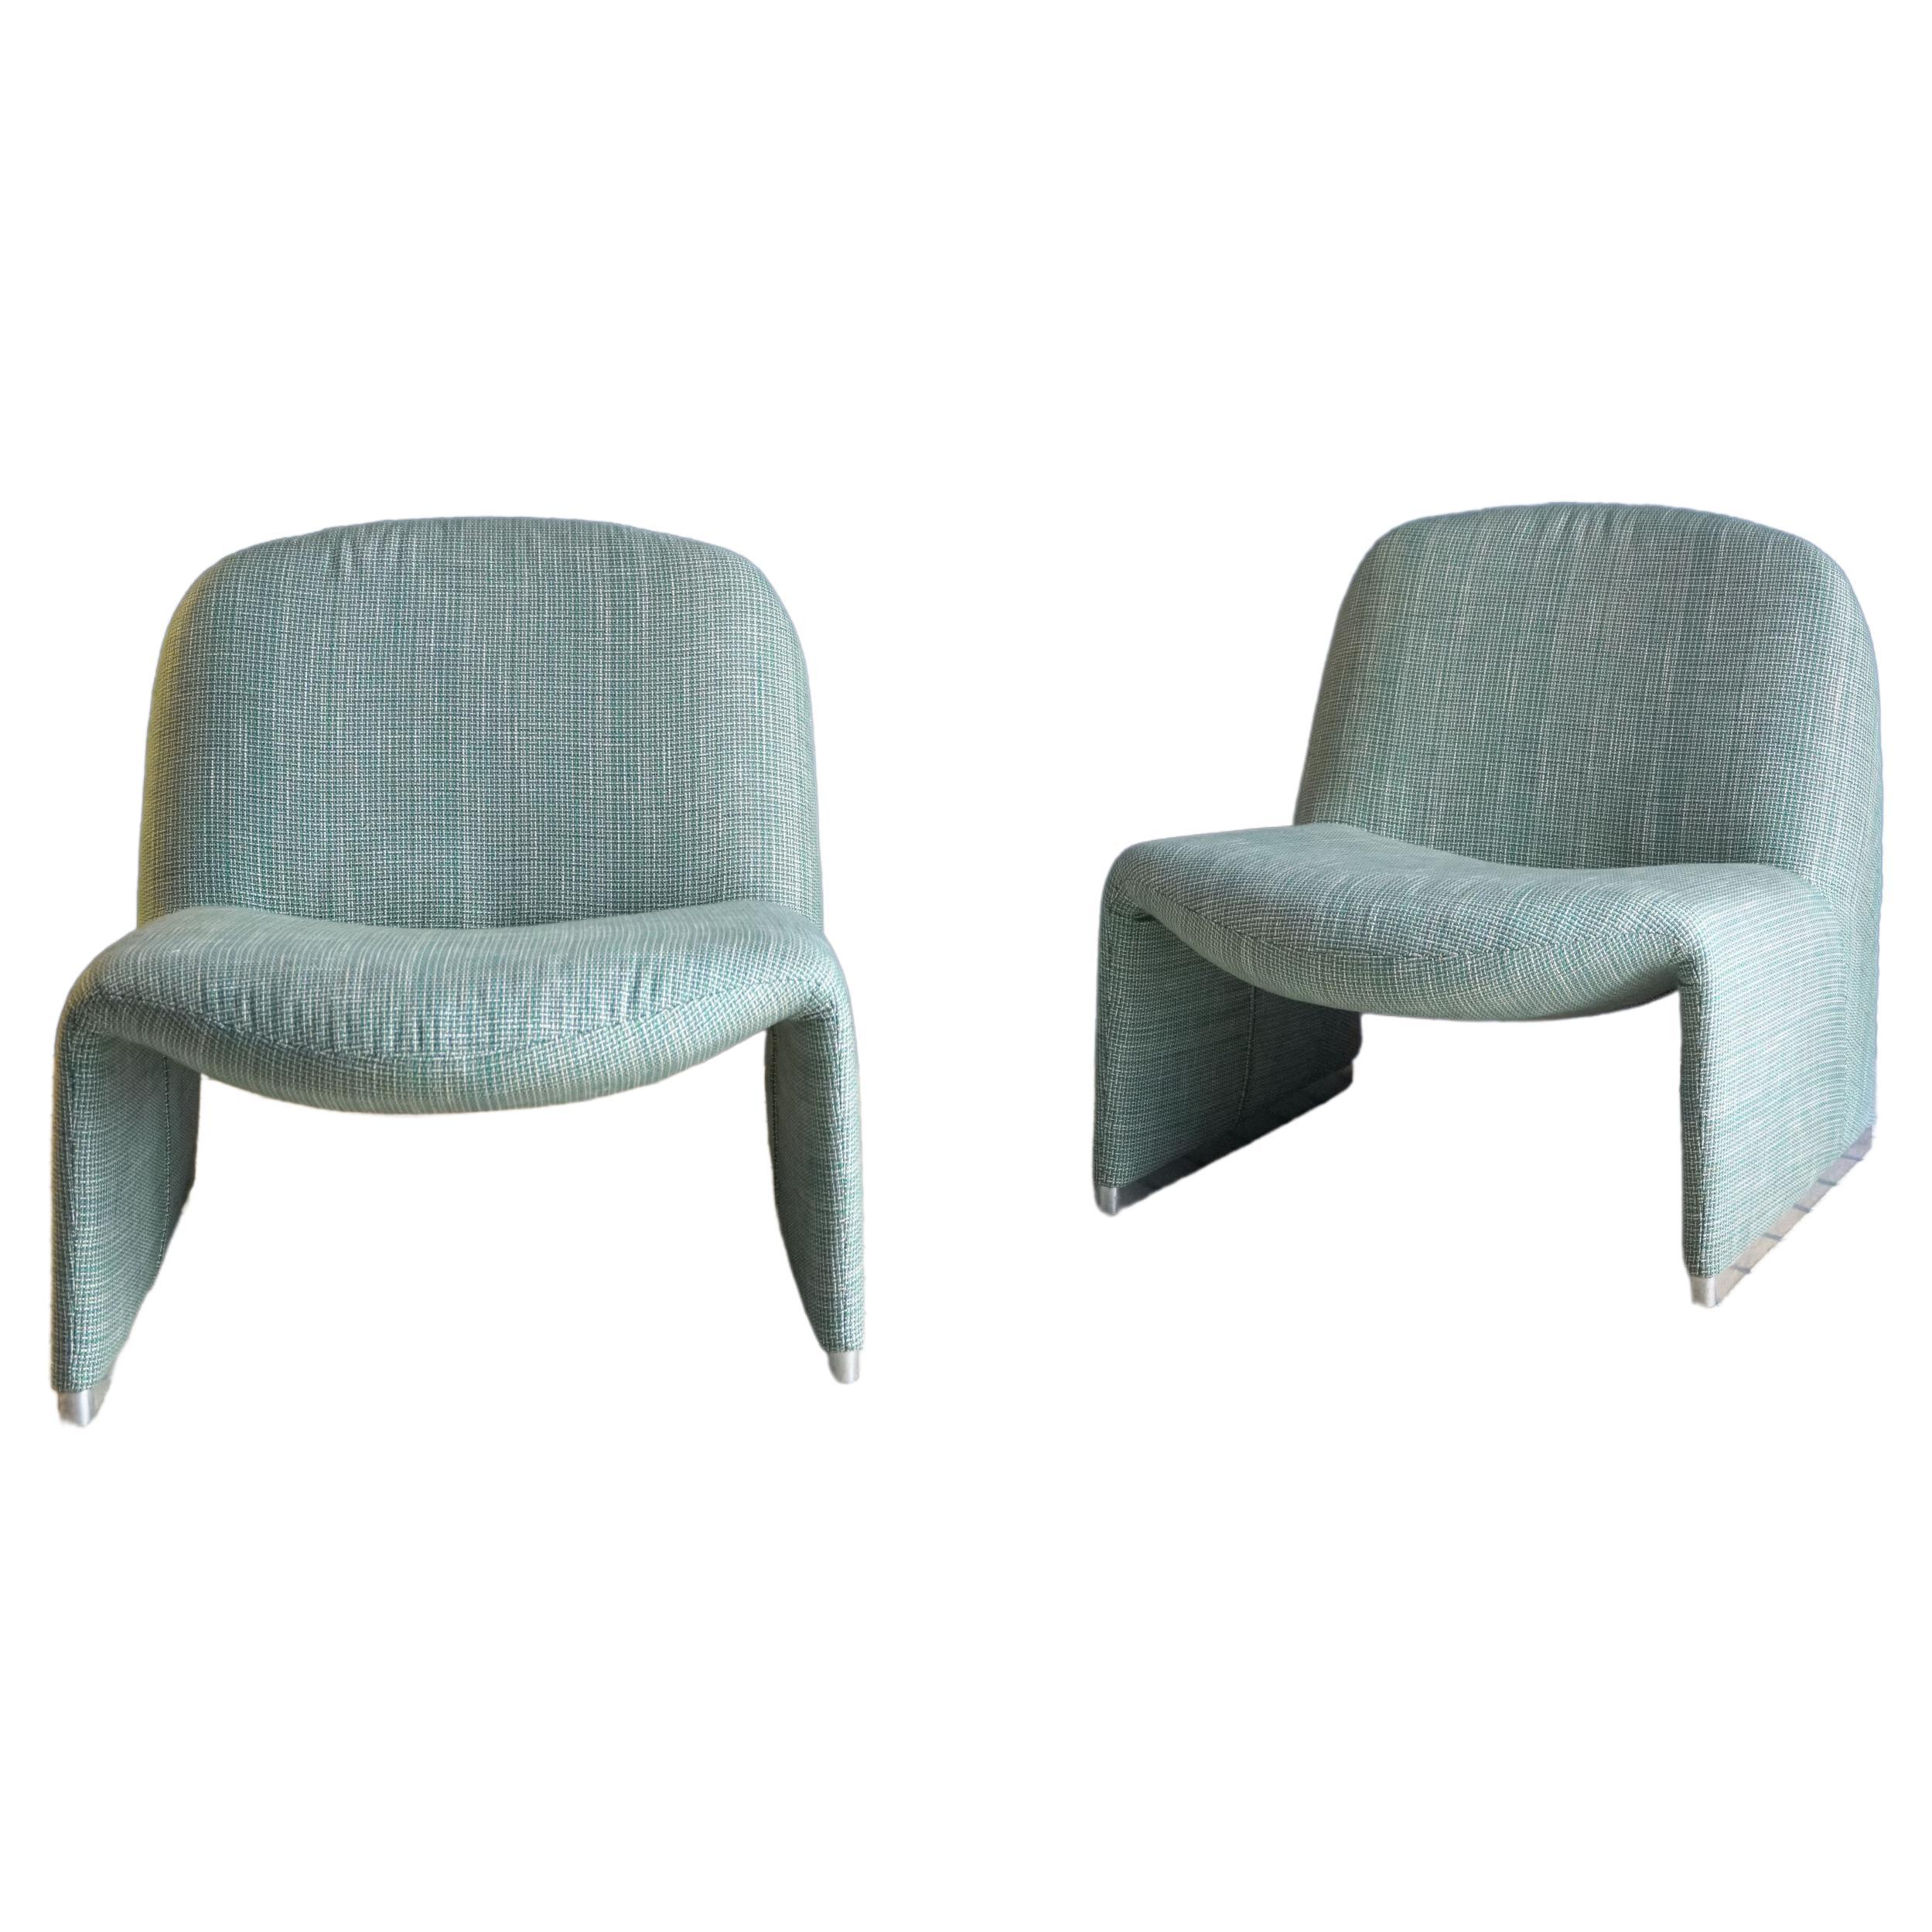 Paire de fauteuils Alky des années 70 du designer Giancarlo Piretti